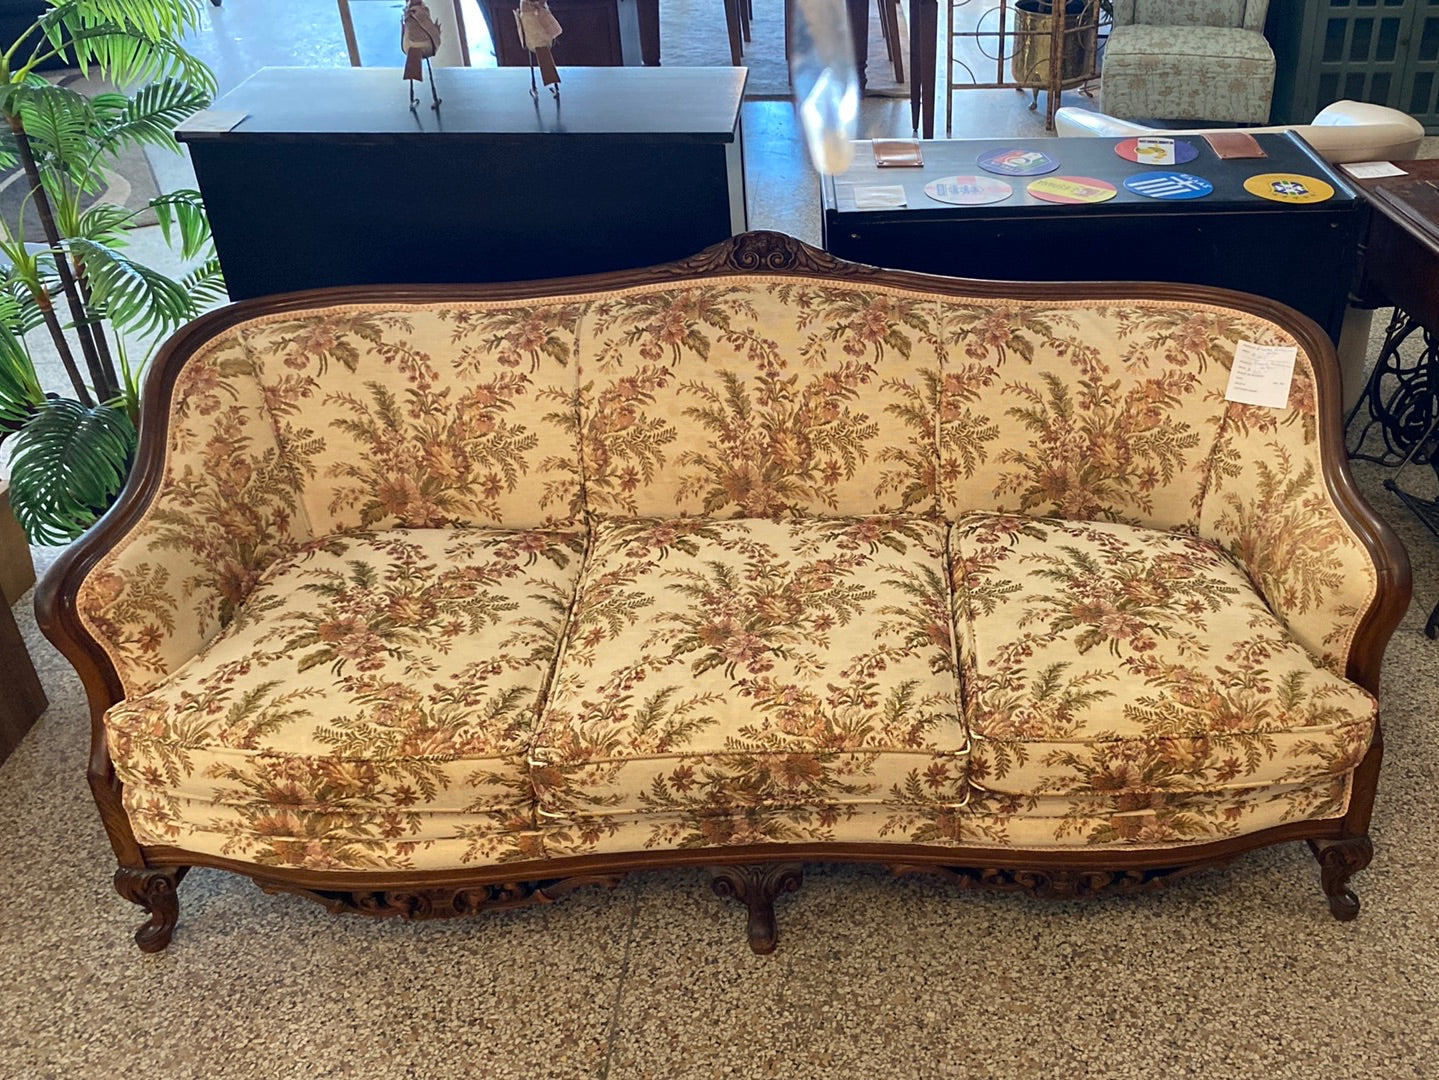 Floral antique Sofa